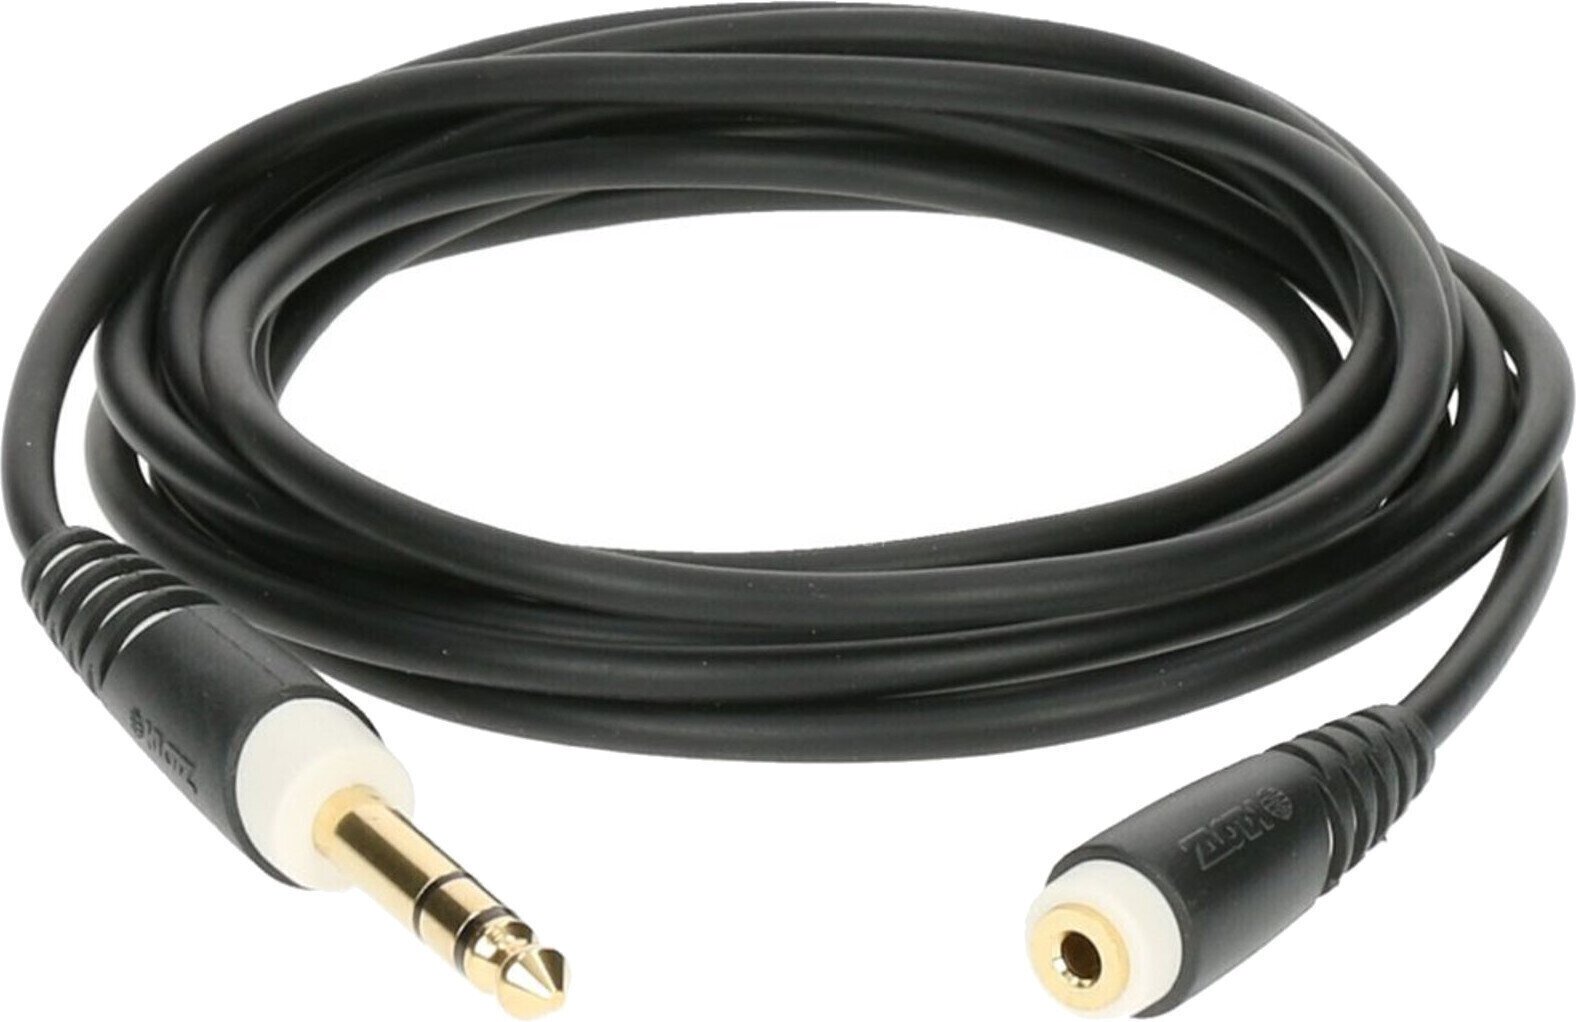 Kabel voor hoofdtelefoon Klotz AS-EX60300 Kabel voor hoofdtelefoon